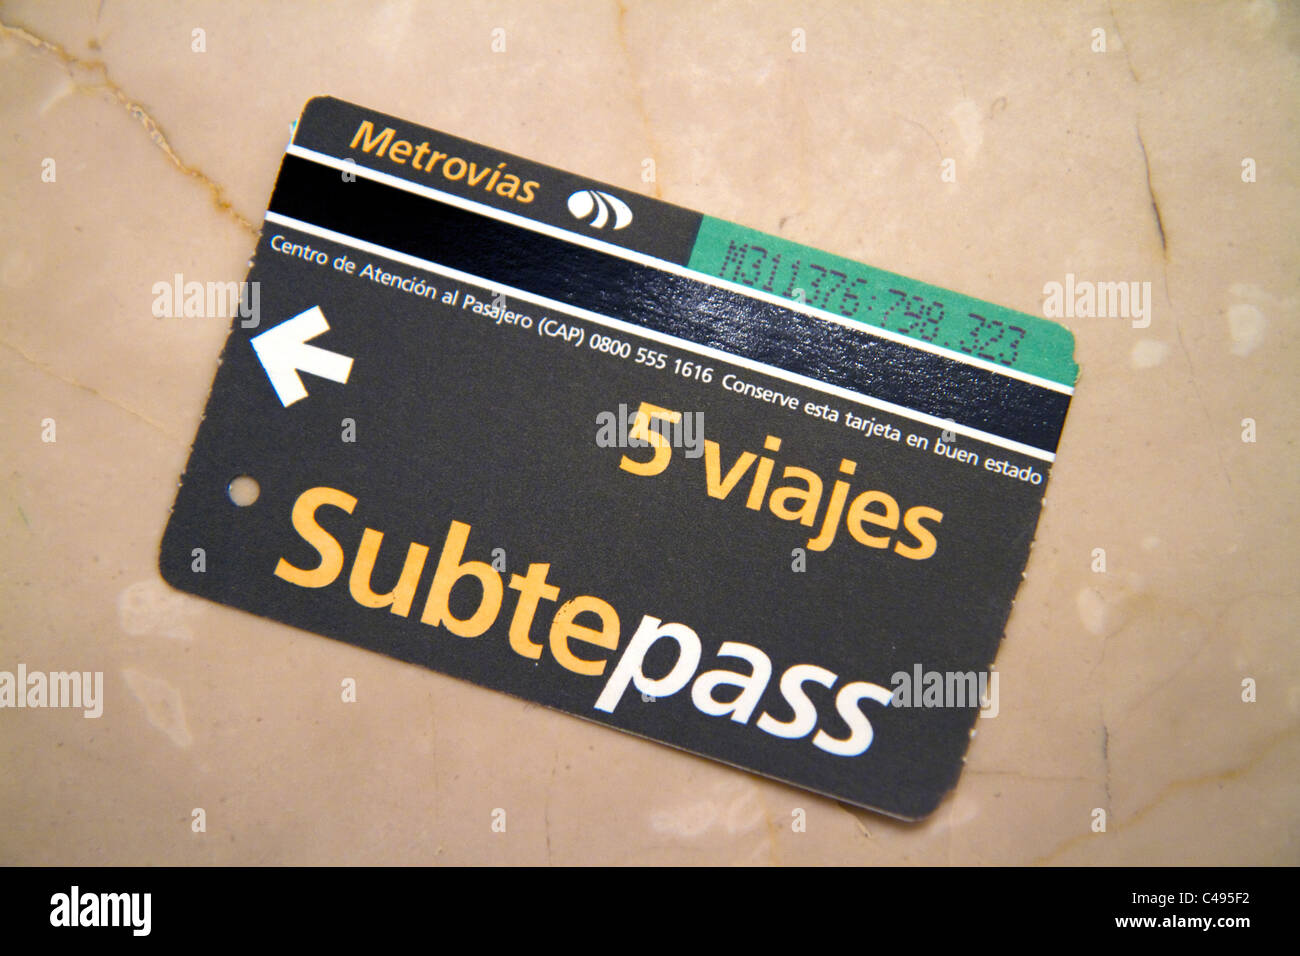 Subtepass pour utilisation dans le métro de Buenos Aires, Argentine. Banque D'Images